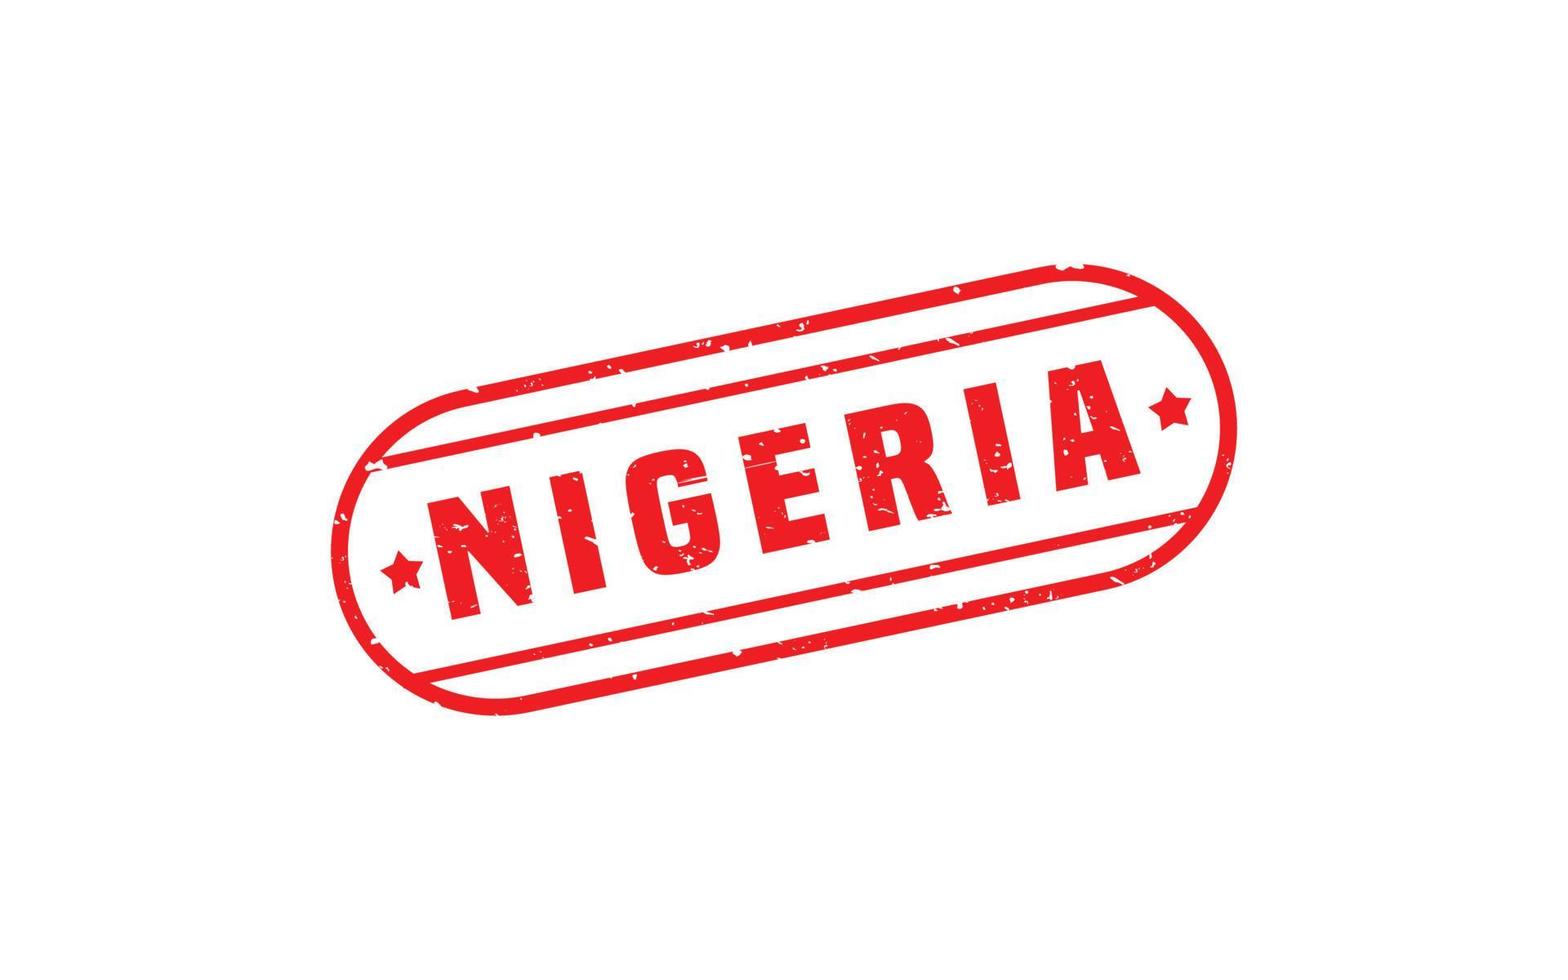 nigeria stämpel sudd med grunge stil på vit bakgrund vektor